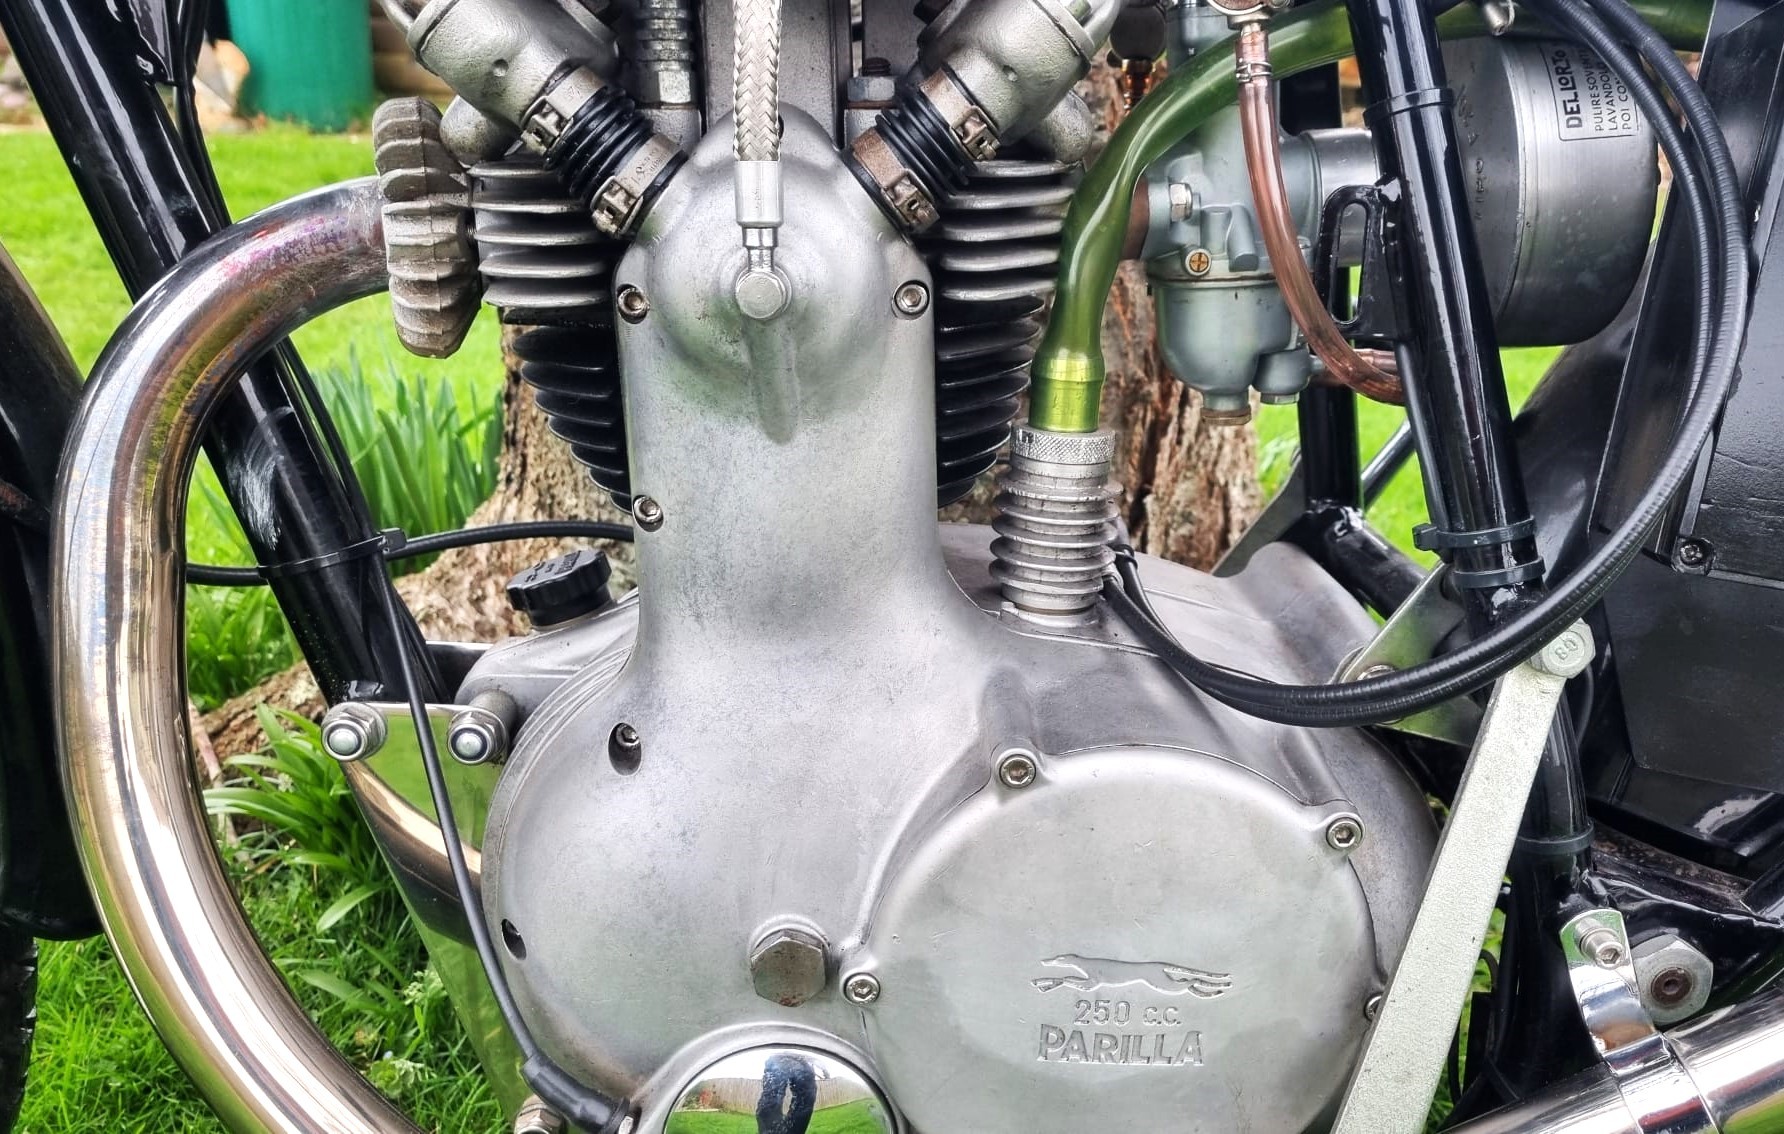 1961 Moto Parilla 250 Wildcat Registration Number: 294 UYV Frame Number: 700537 Engine No 700537 - Image 10 of 14